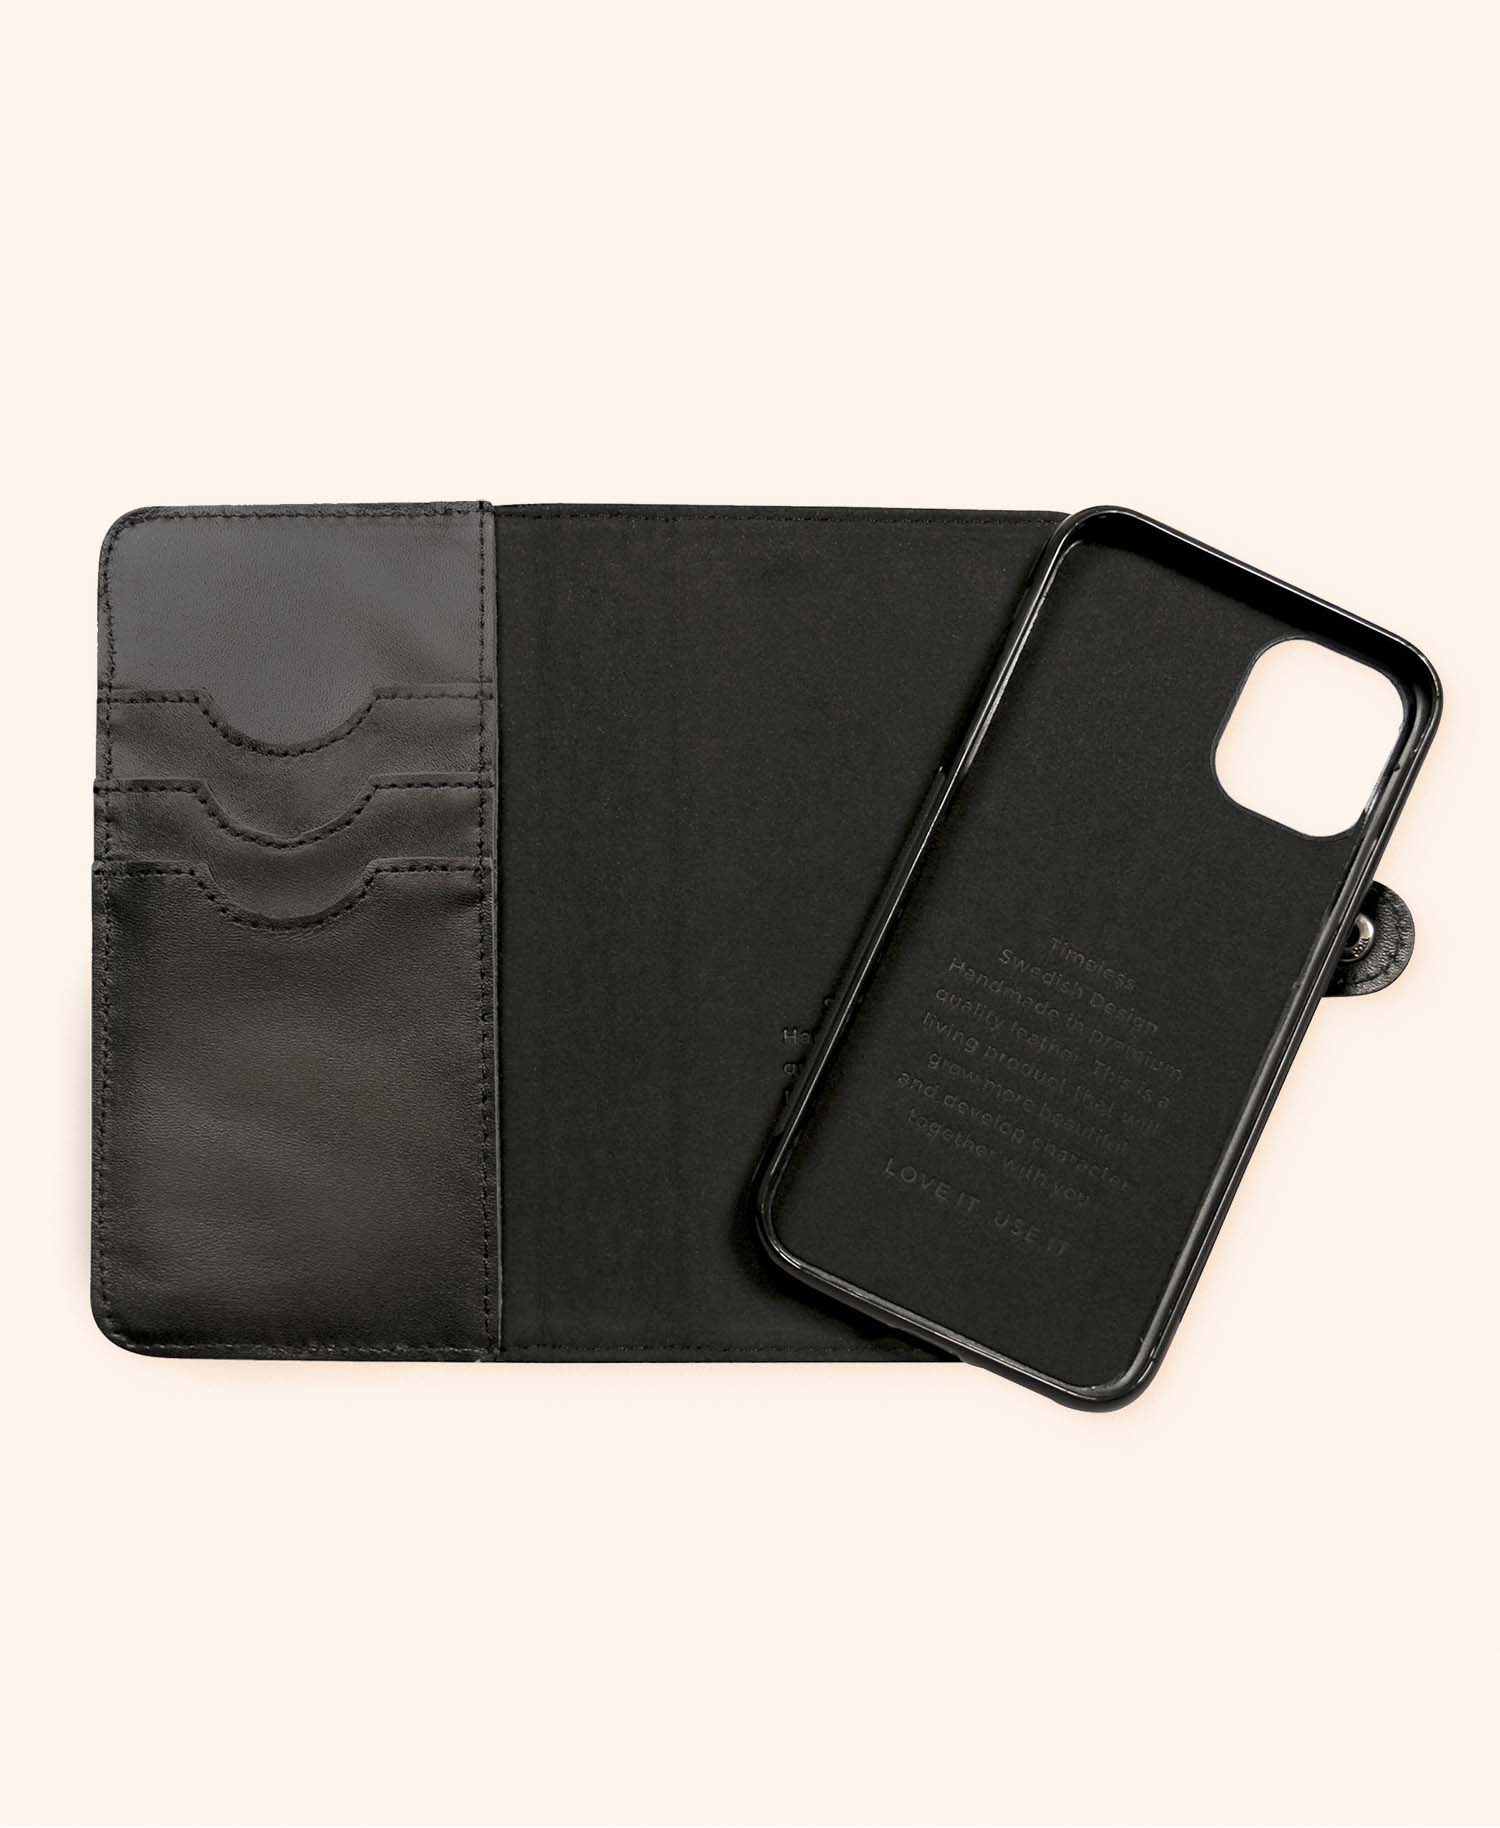 Andrew black wallet iphone 11 - open